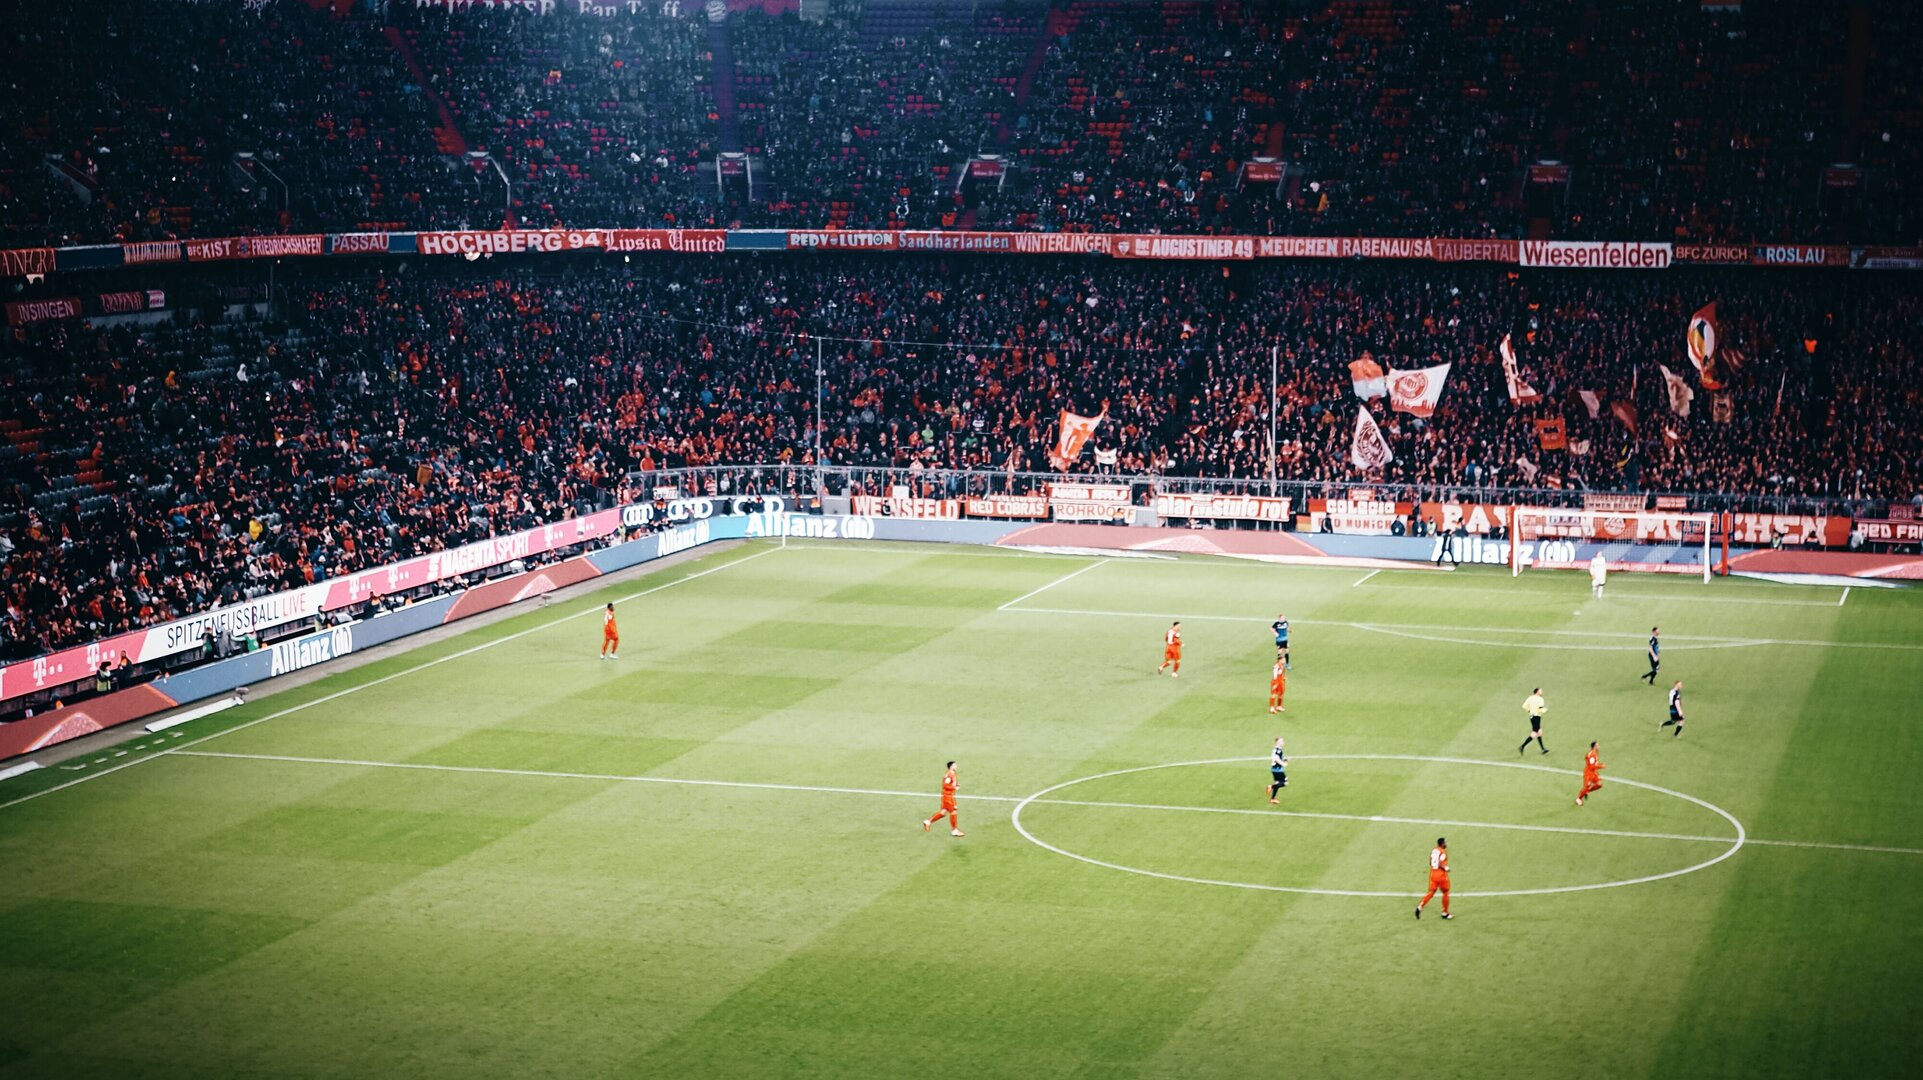 Bayern Munich’s home ground of the Allianz Arena